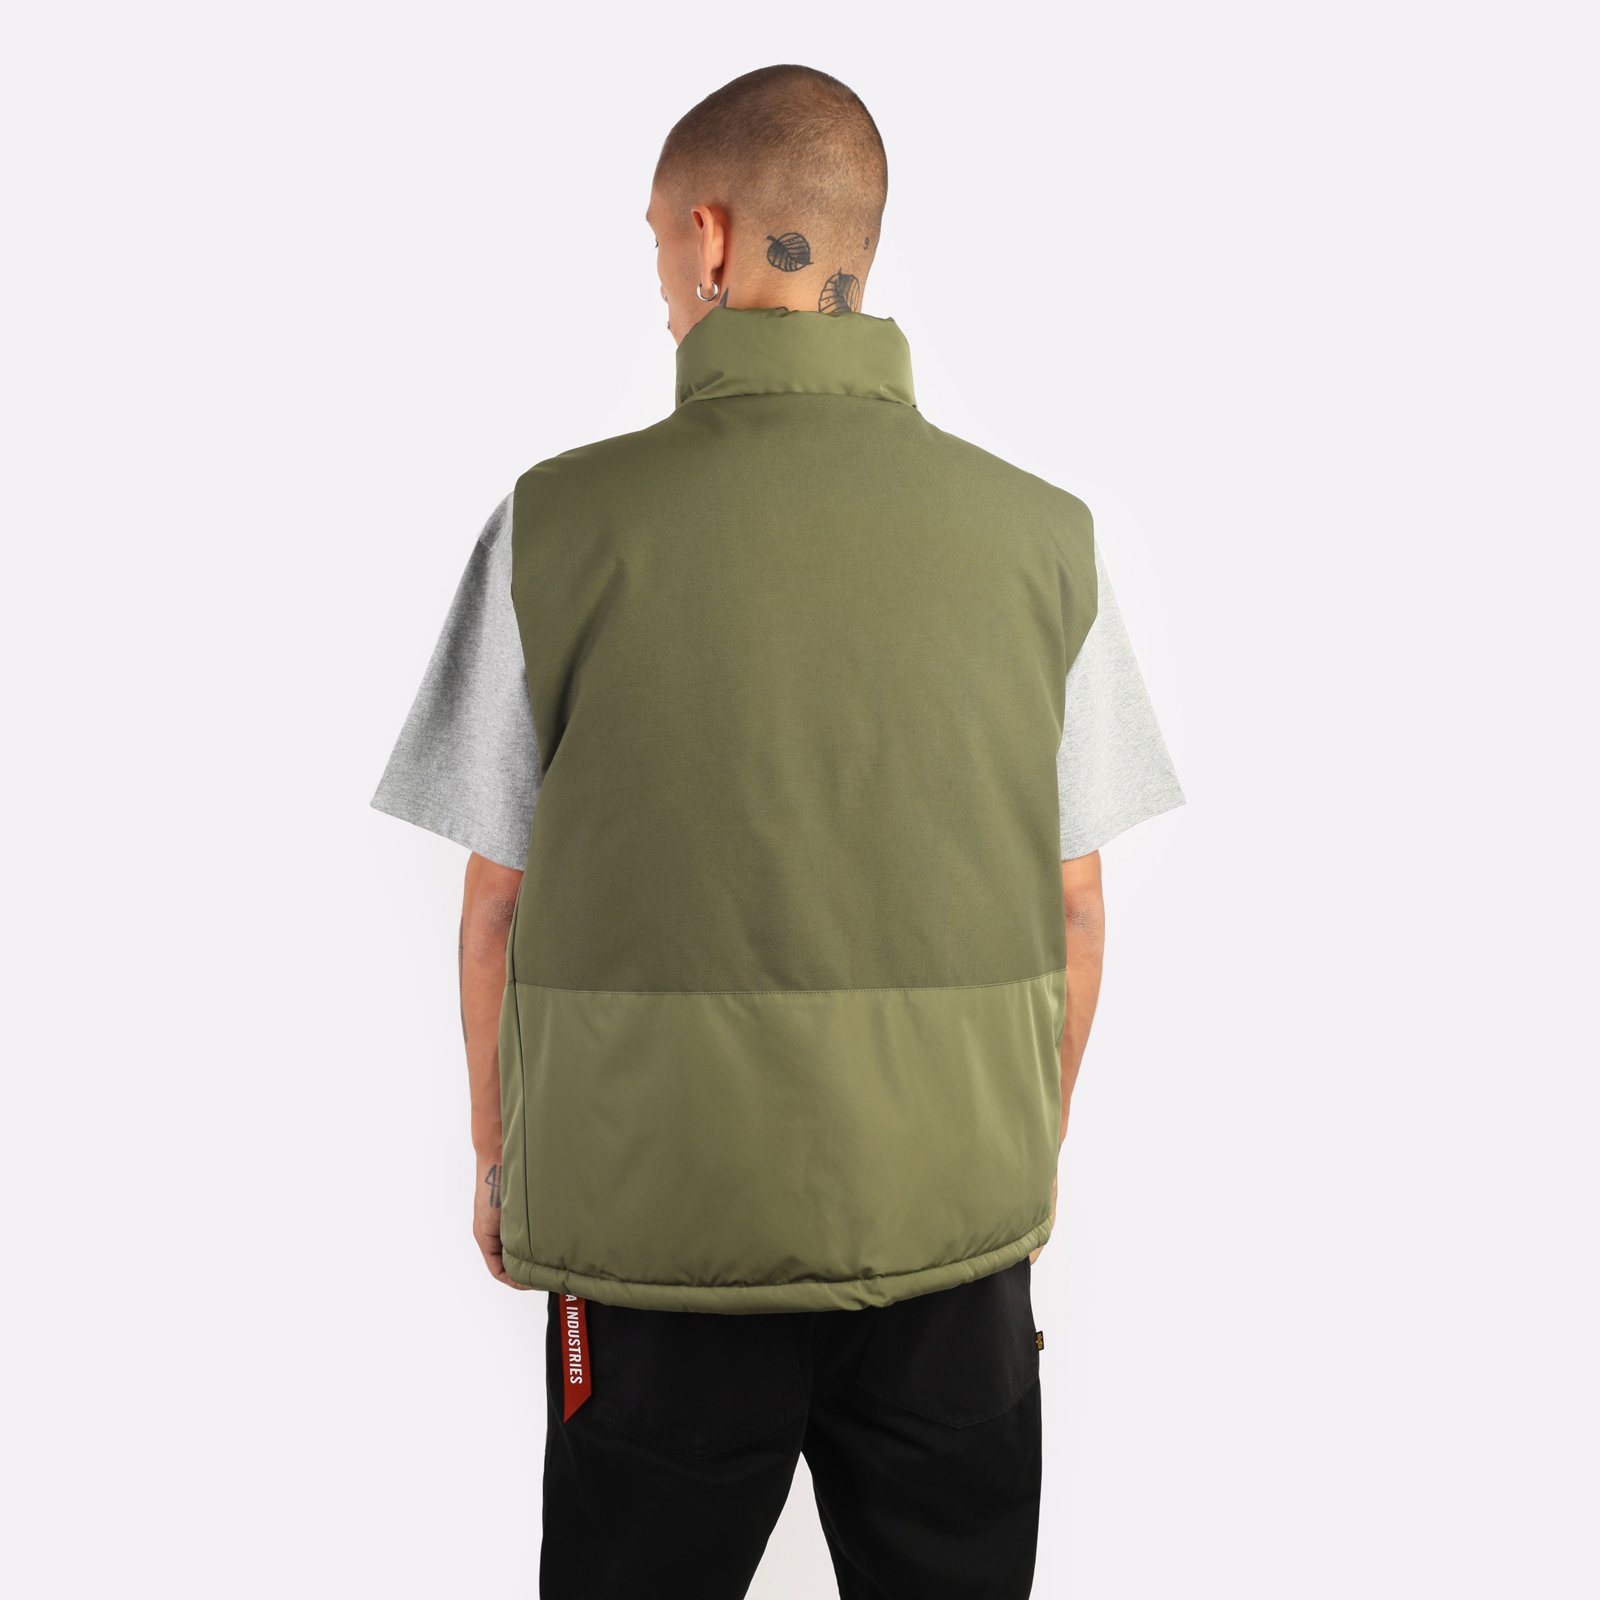 мужской жилет Alpha Industries PCU Mod Vest  (MJU53500C1-green)  - цена, описание, фото 2